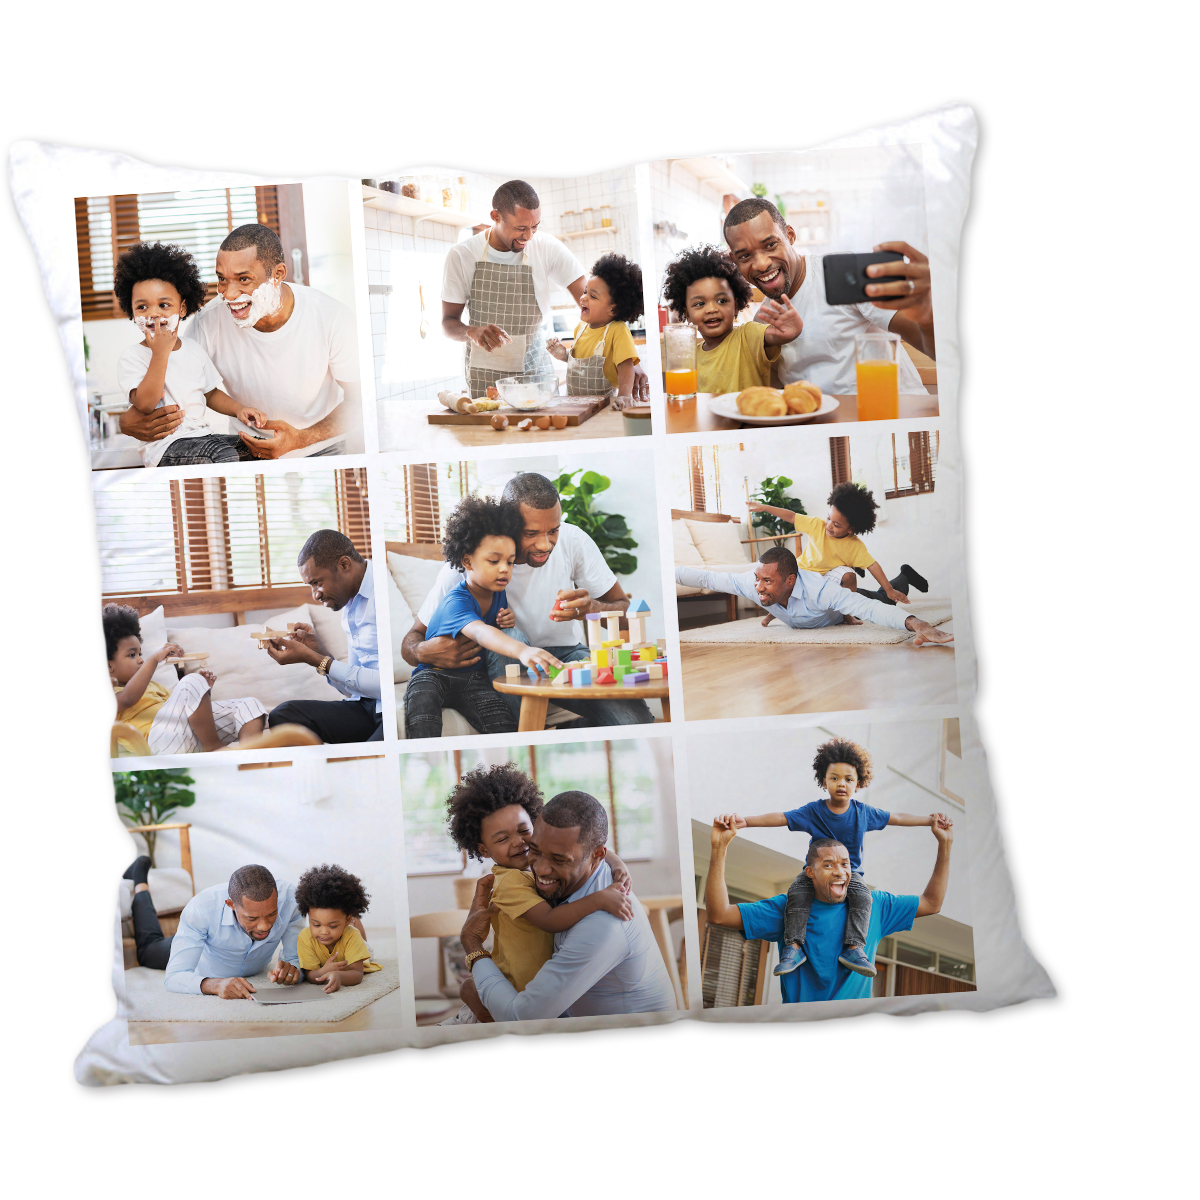 Personalised Photo Cushion - 9 Photo Upload Collage